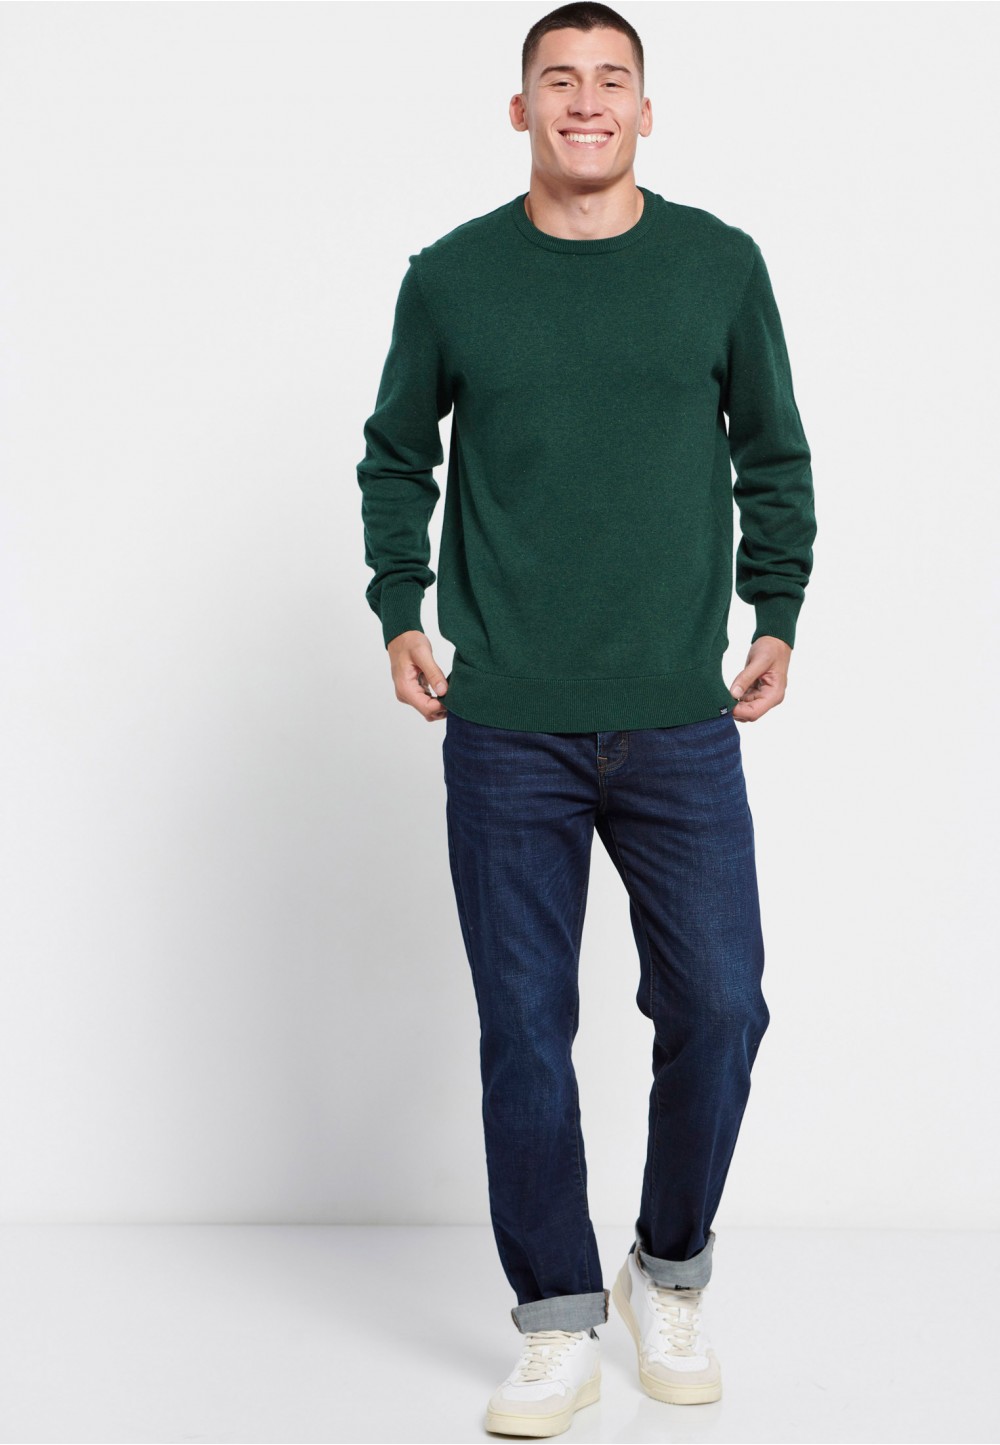 Чоловічий пуловер у насиченому зеленому кольорі